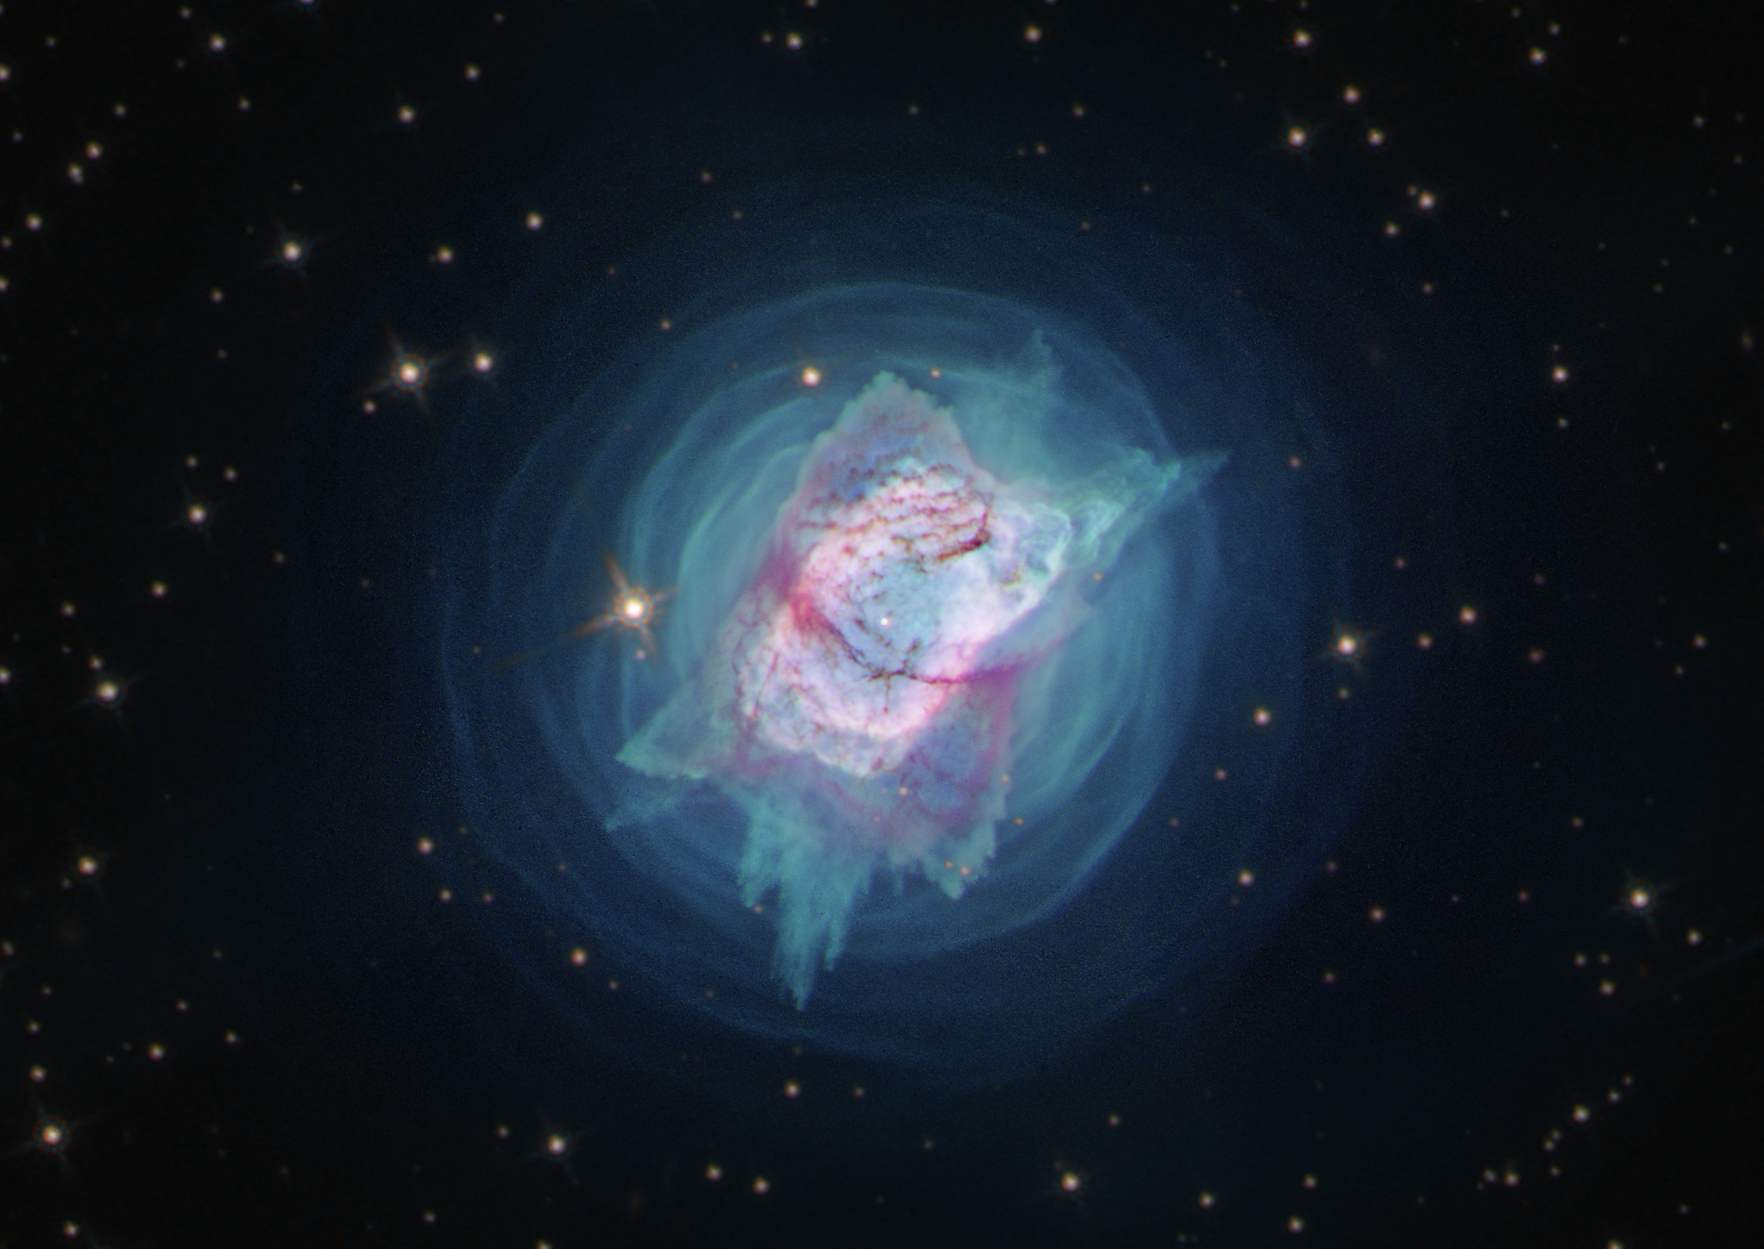 Hubble image of NGC 7027